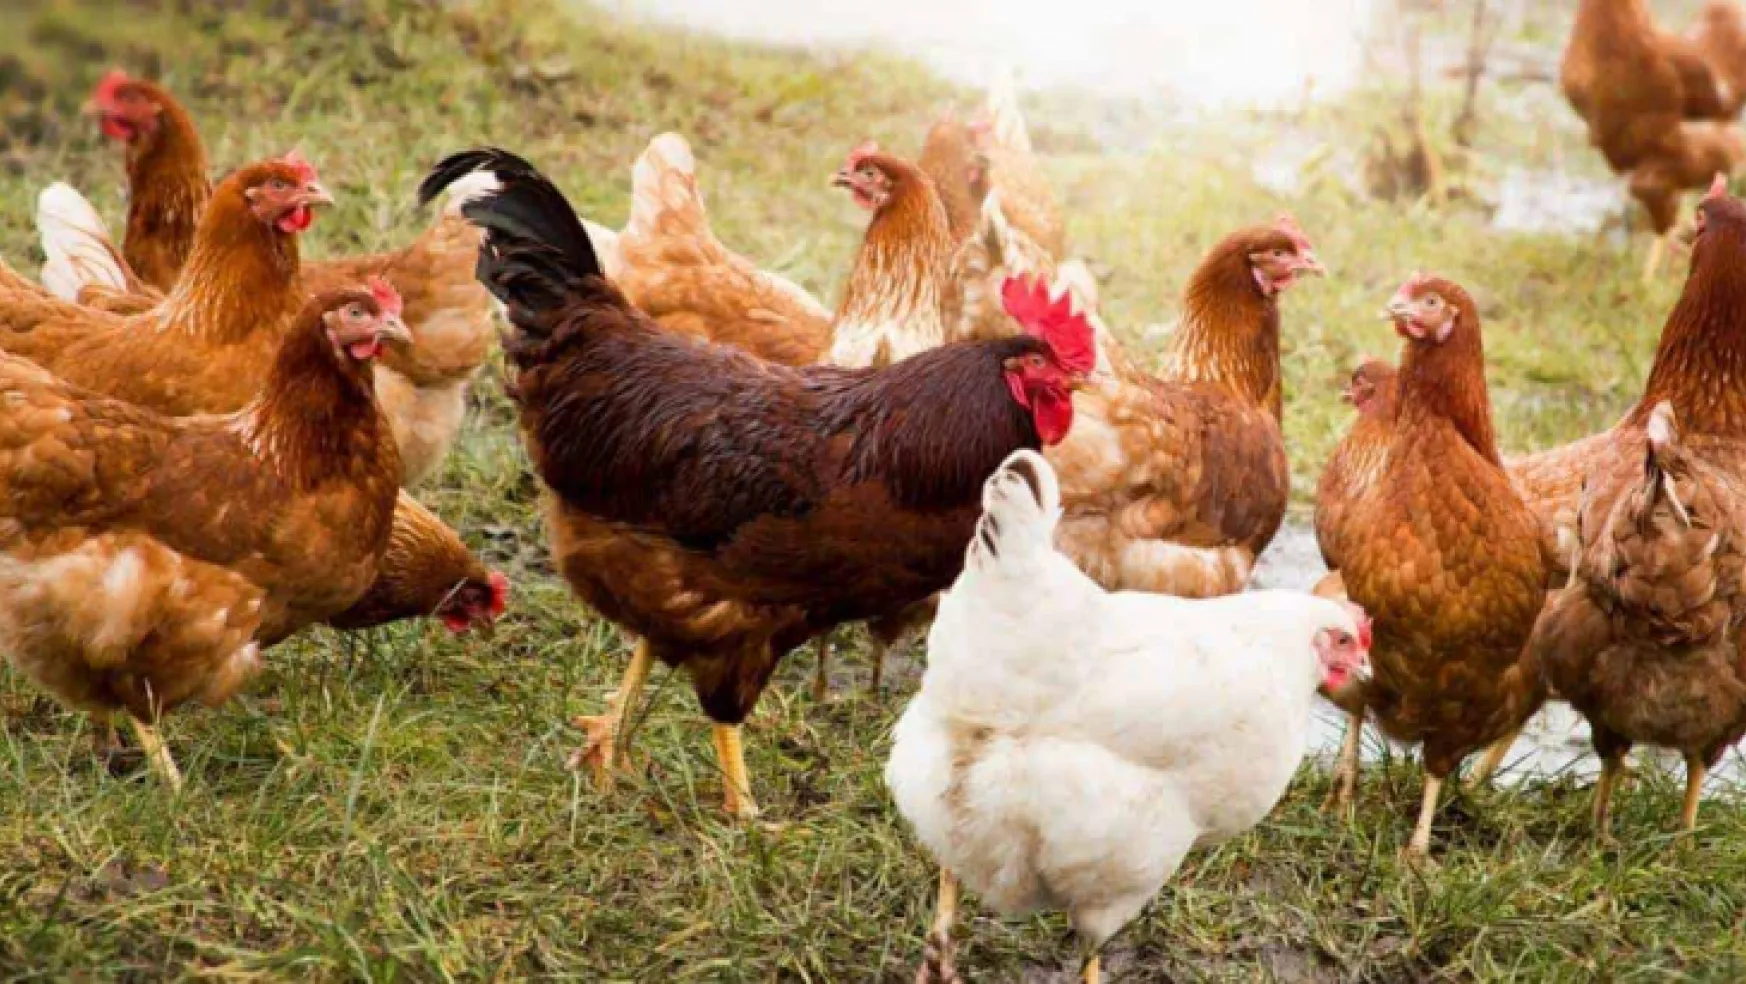 Tavuk eti üretimi 201 bin 203 ton, tavuk yumurtası üretimi 1,77 milyar adet olarak gerçekleşti